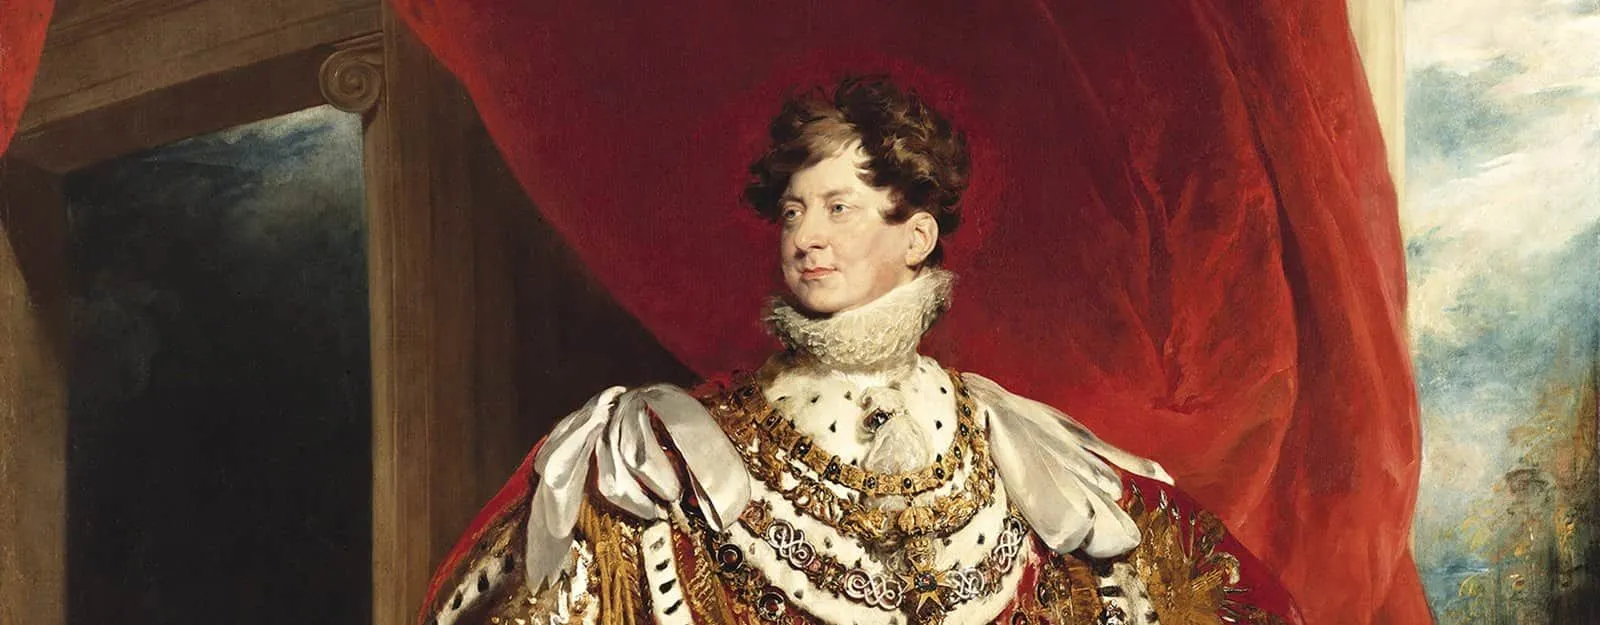 Картина короля Георга IV на его выставке.